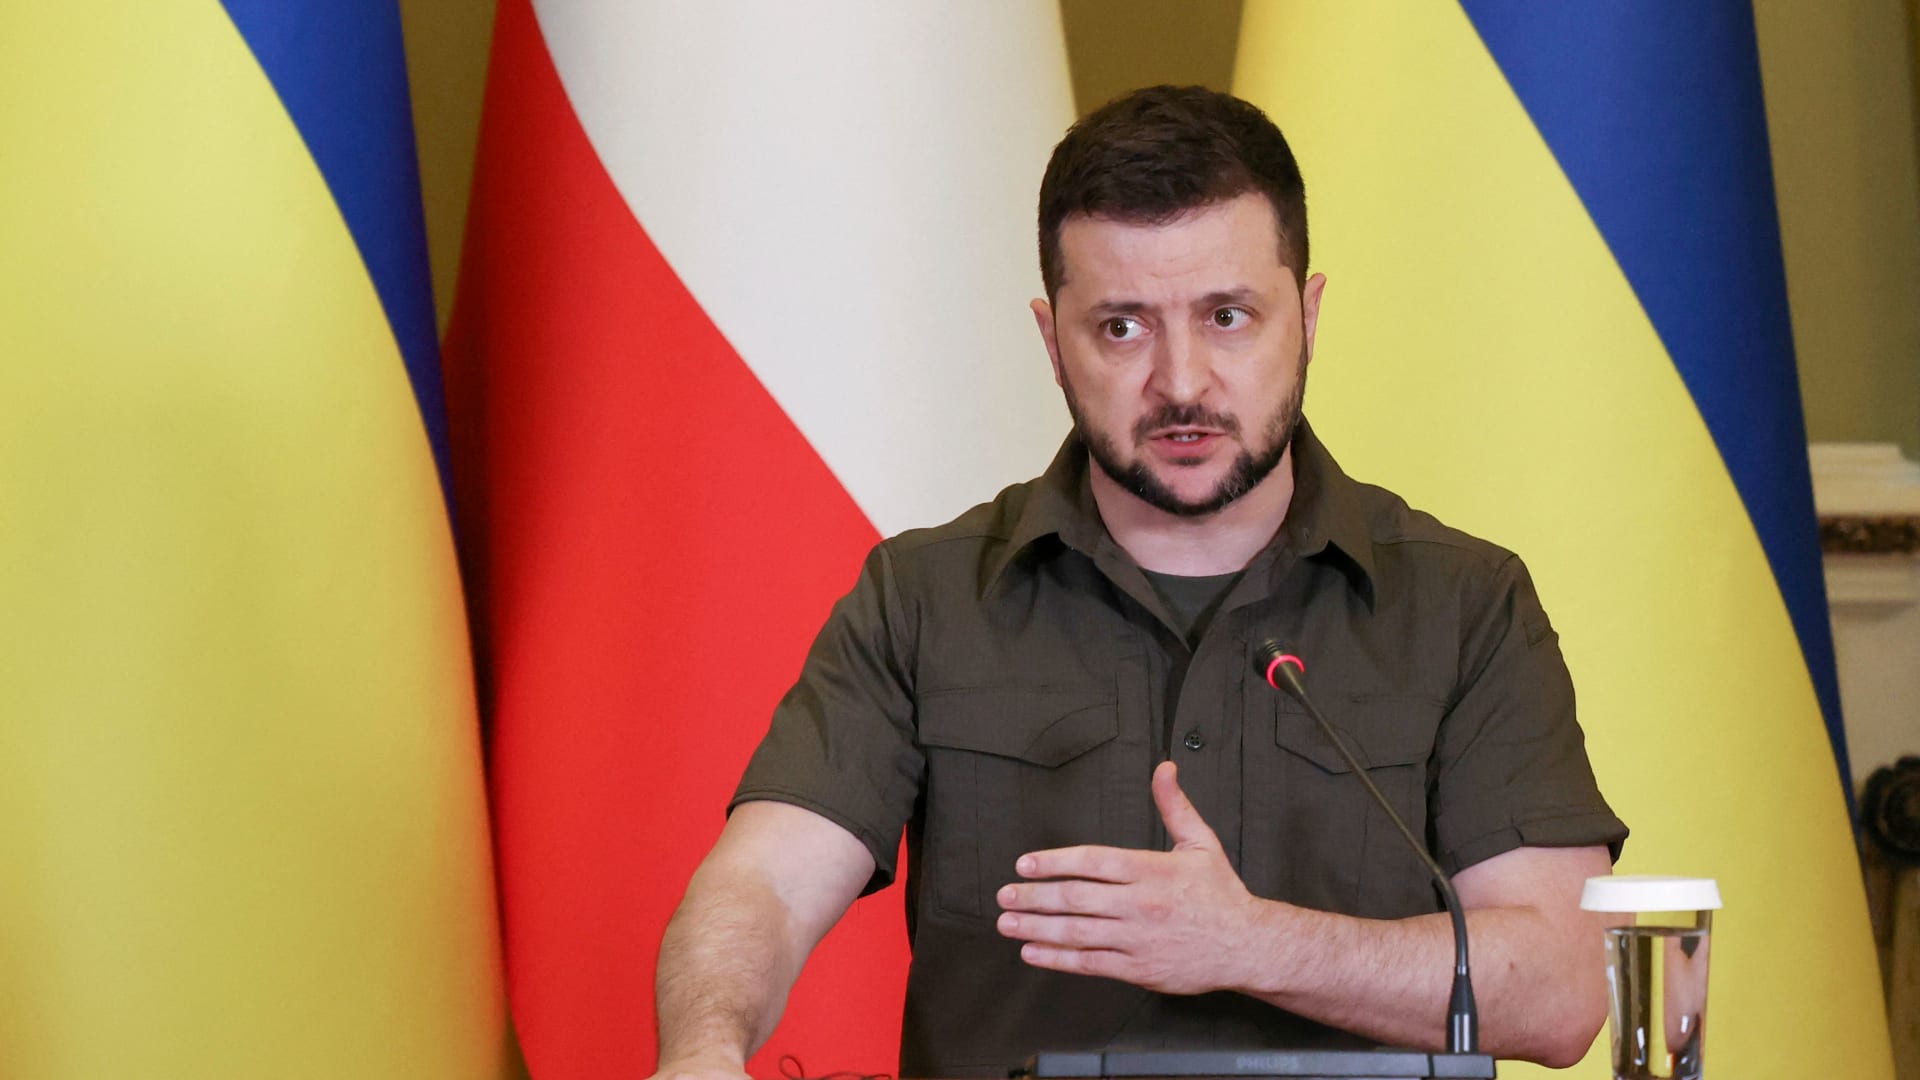 زيلينسكي يرد على طلب لـ"تشريع زواج المثليين" في أوكرانيا في ظل الحرب